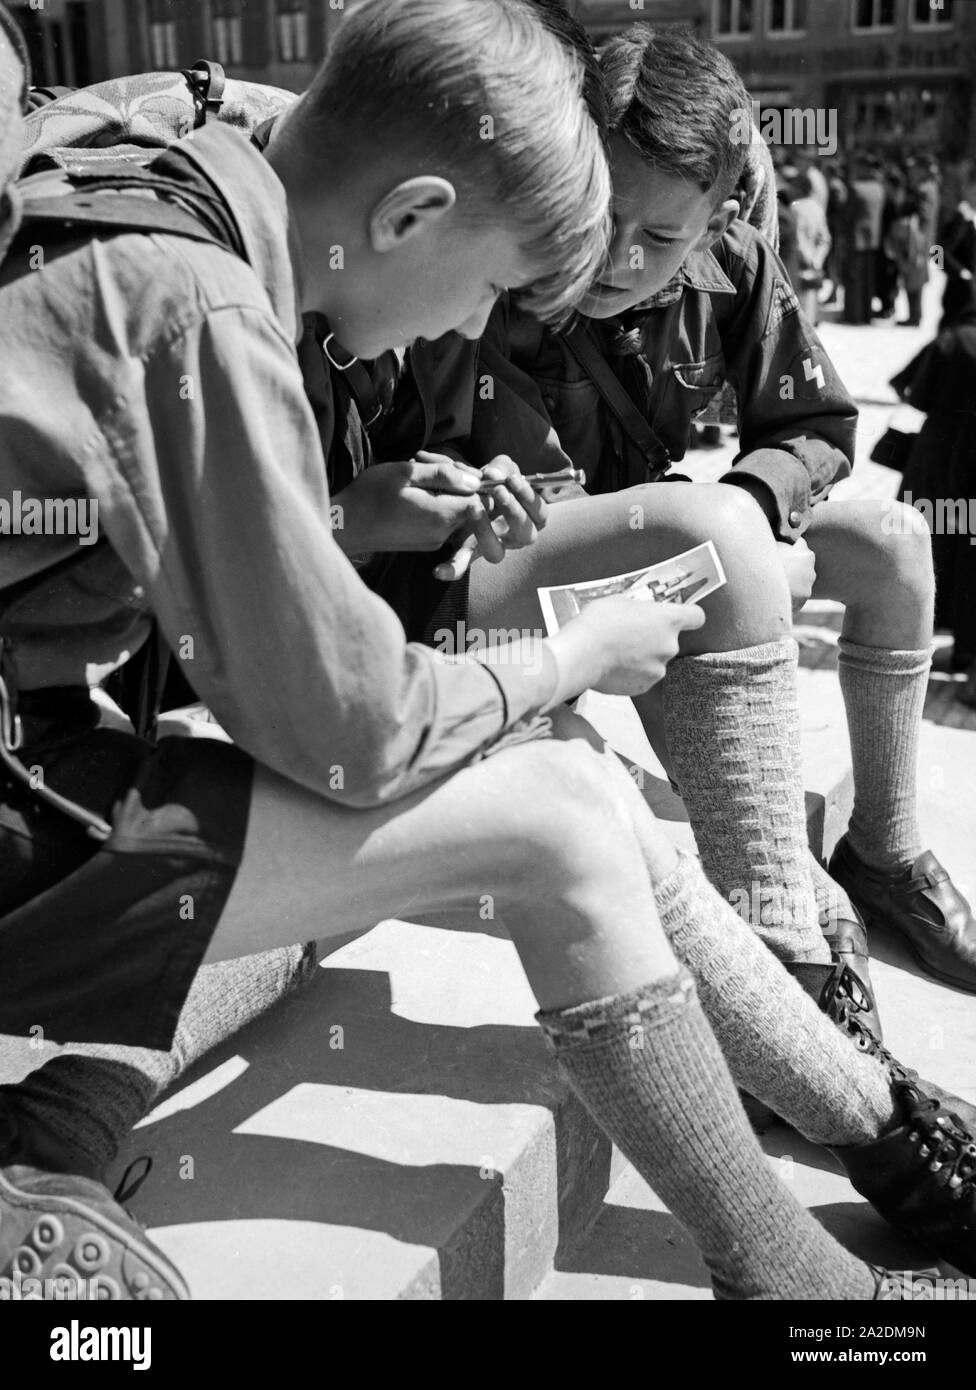 Drei Hitlerjungen schreiben eine Postkarte von einer Wanderung, Deutschland 1930er Jahre. Three Hitler youths writing a postcard from a wandering trip, Germany 1930s. Stock Photo